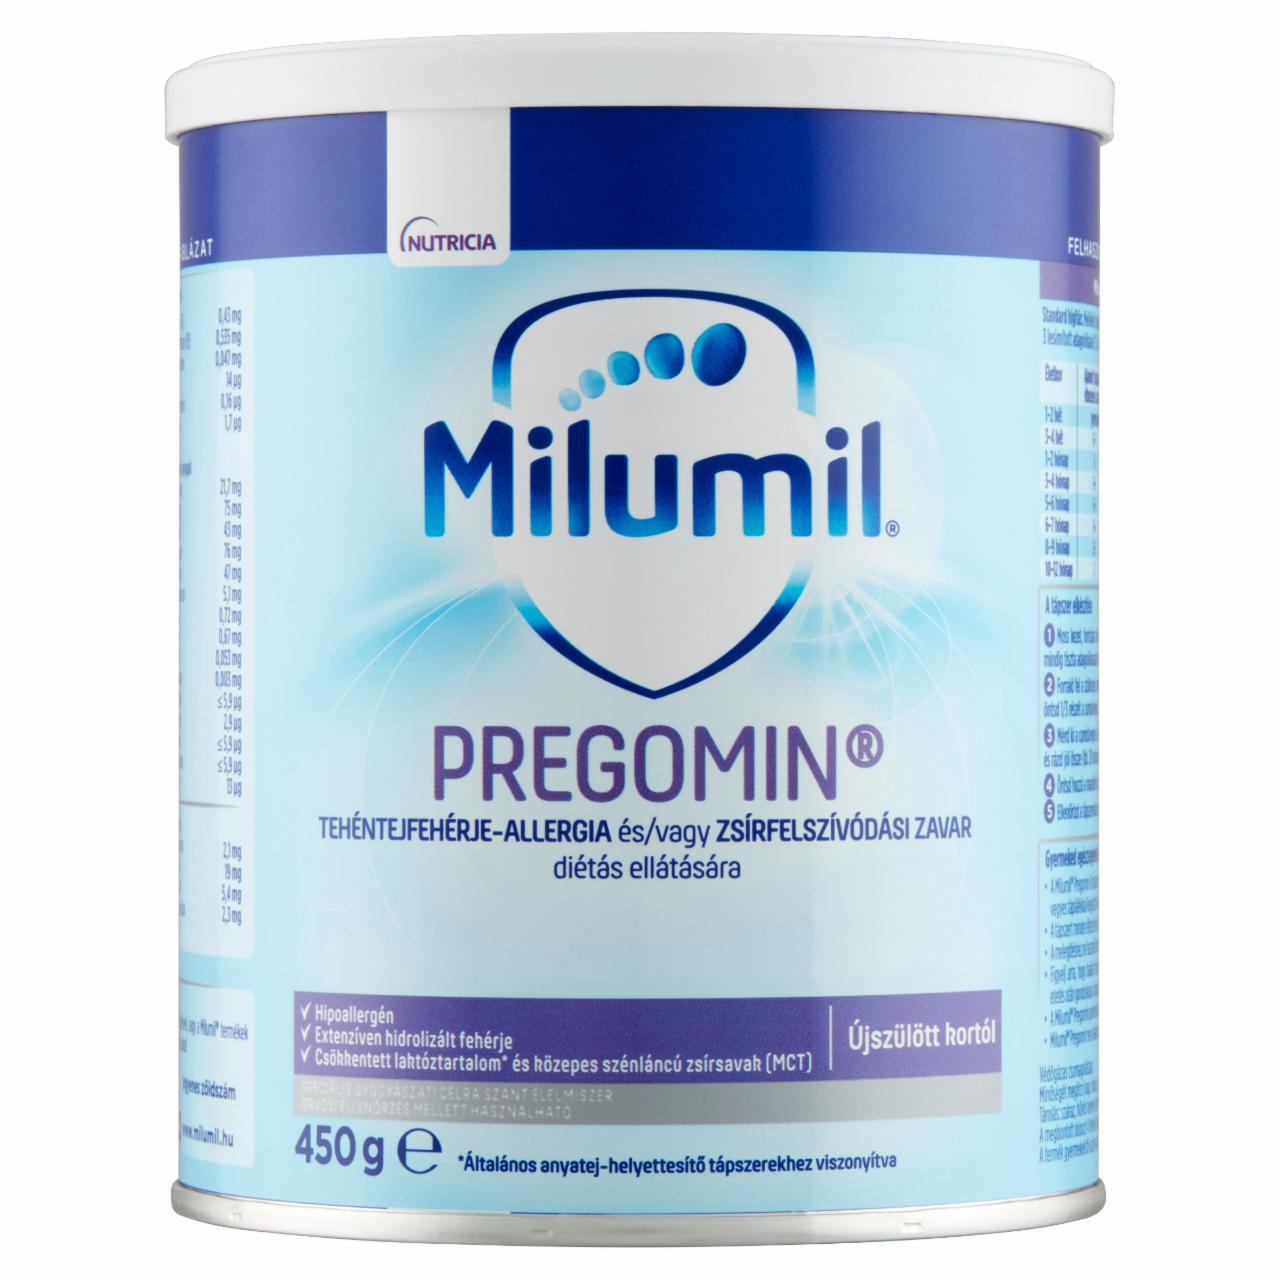 Képek - Milumil Pregomin speciális - gyógyászati célra szánt - élelmiszer újszülött kortól 450 g